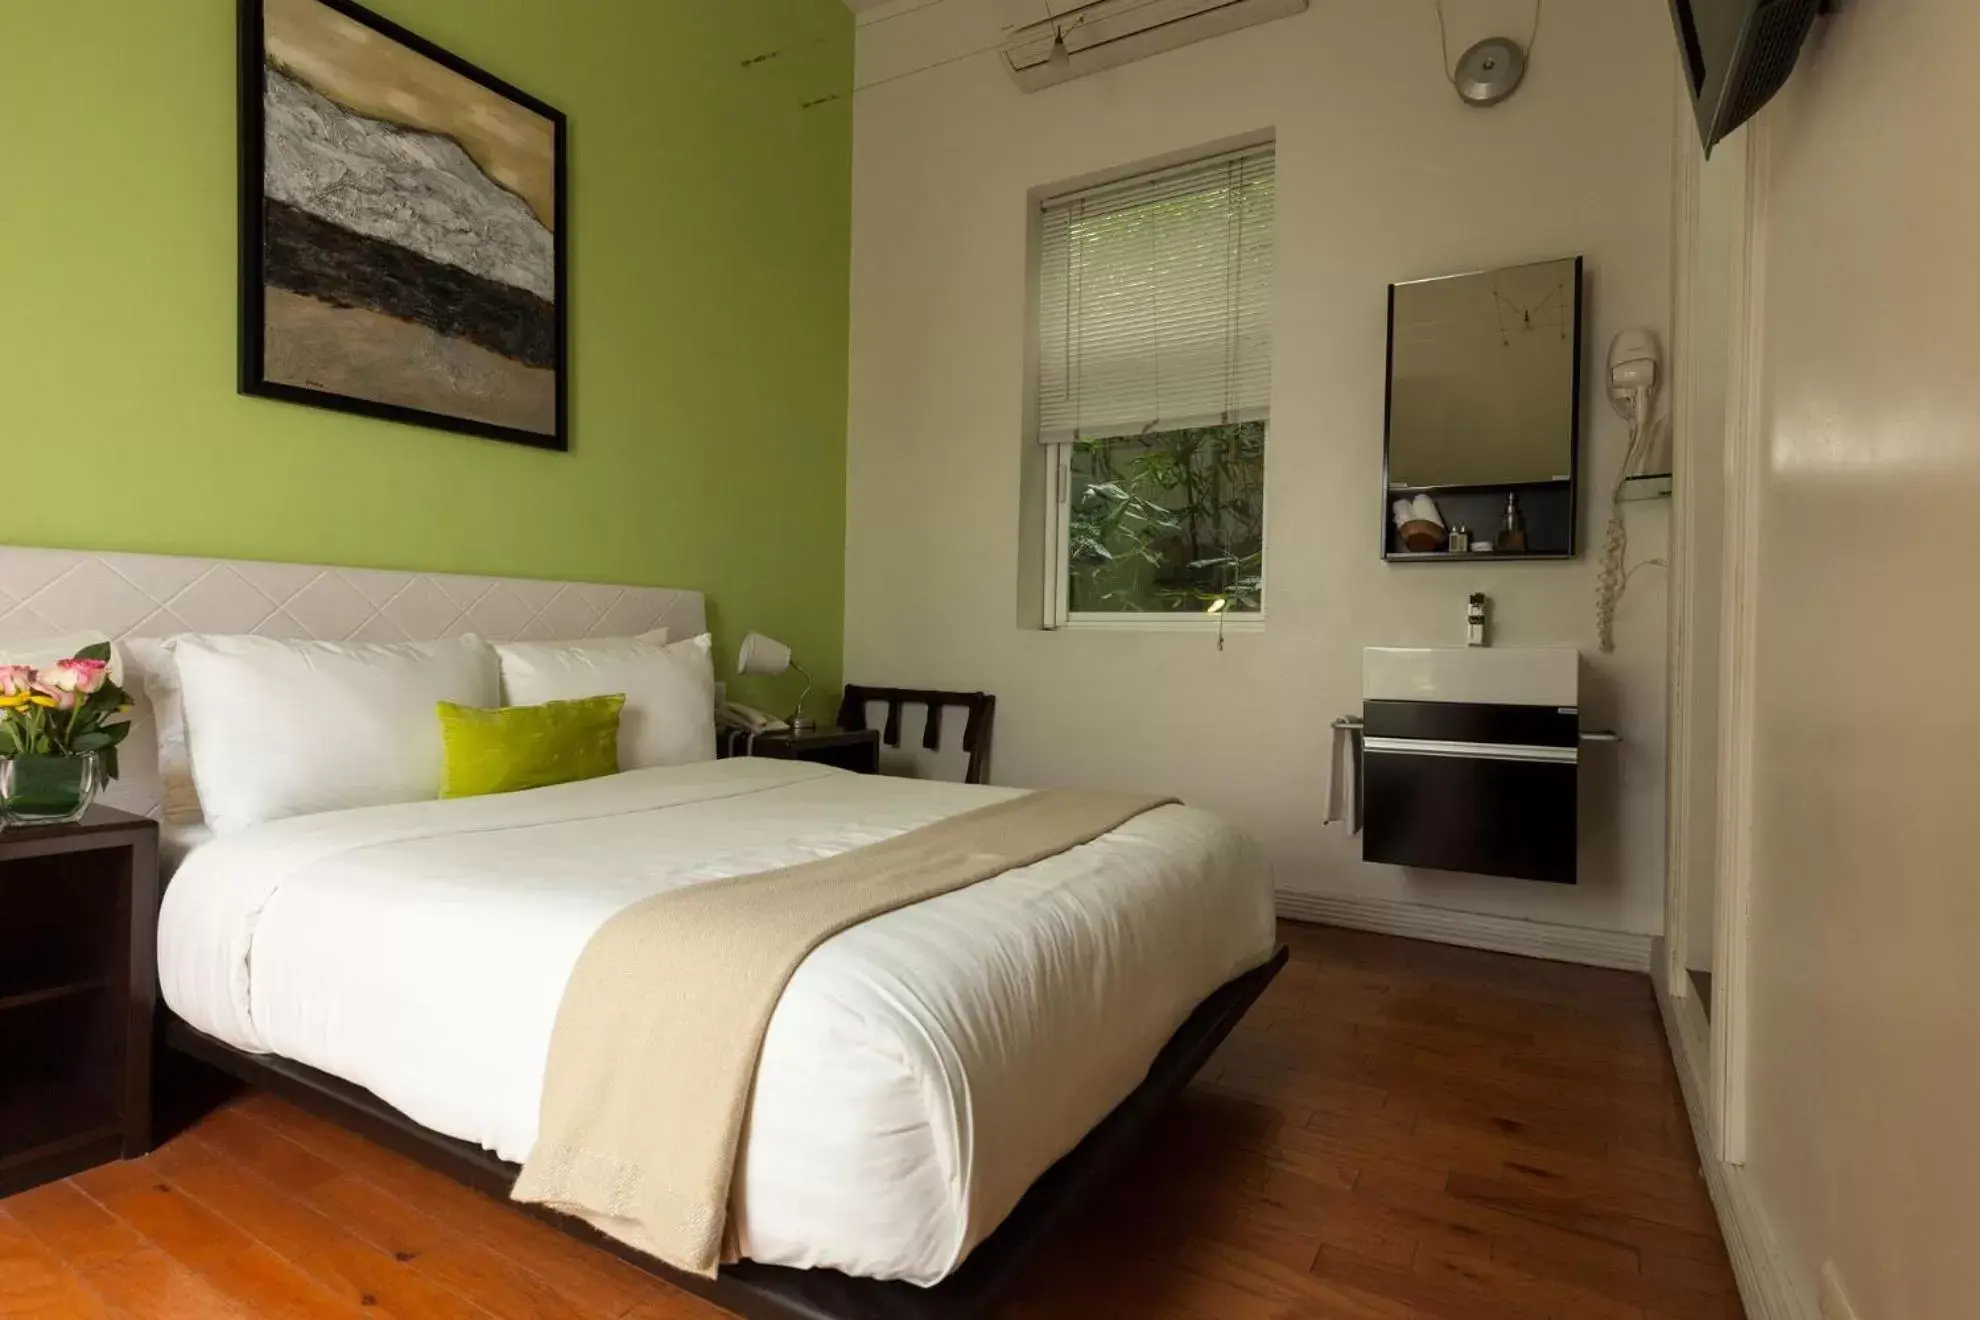 Bed, Room Photo in Hotel Villa Condesa